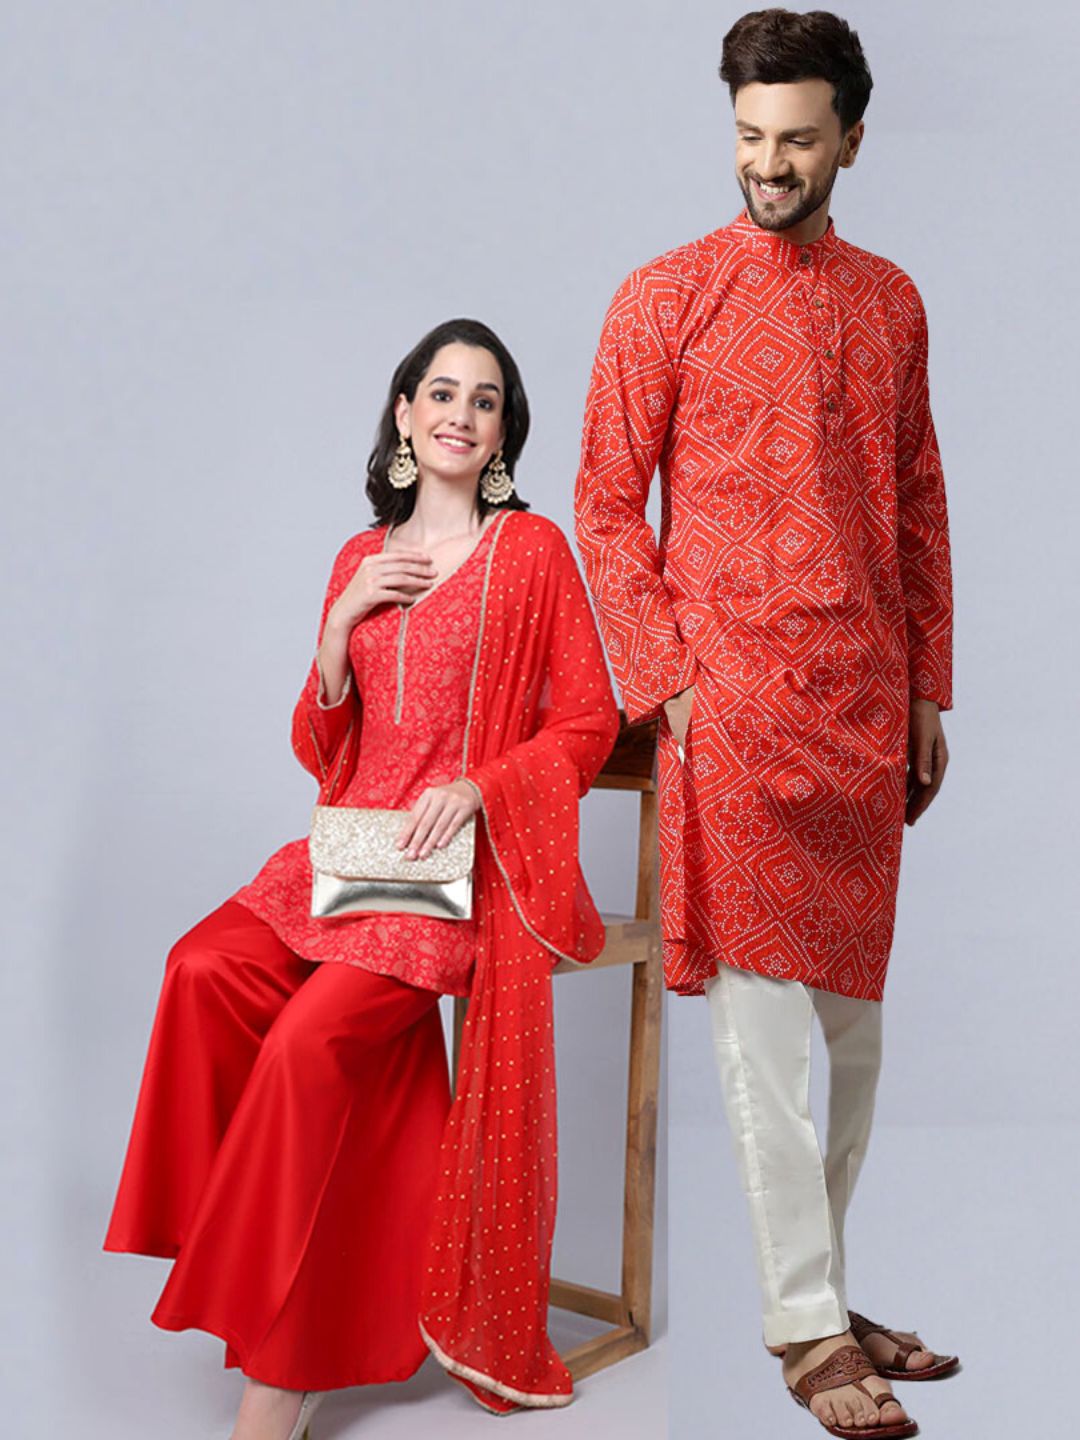 Handmade Couple Dress Set | Cotton V-Neck Printed Matching India | Ubuy